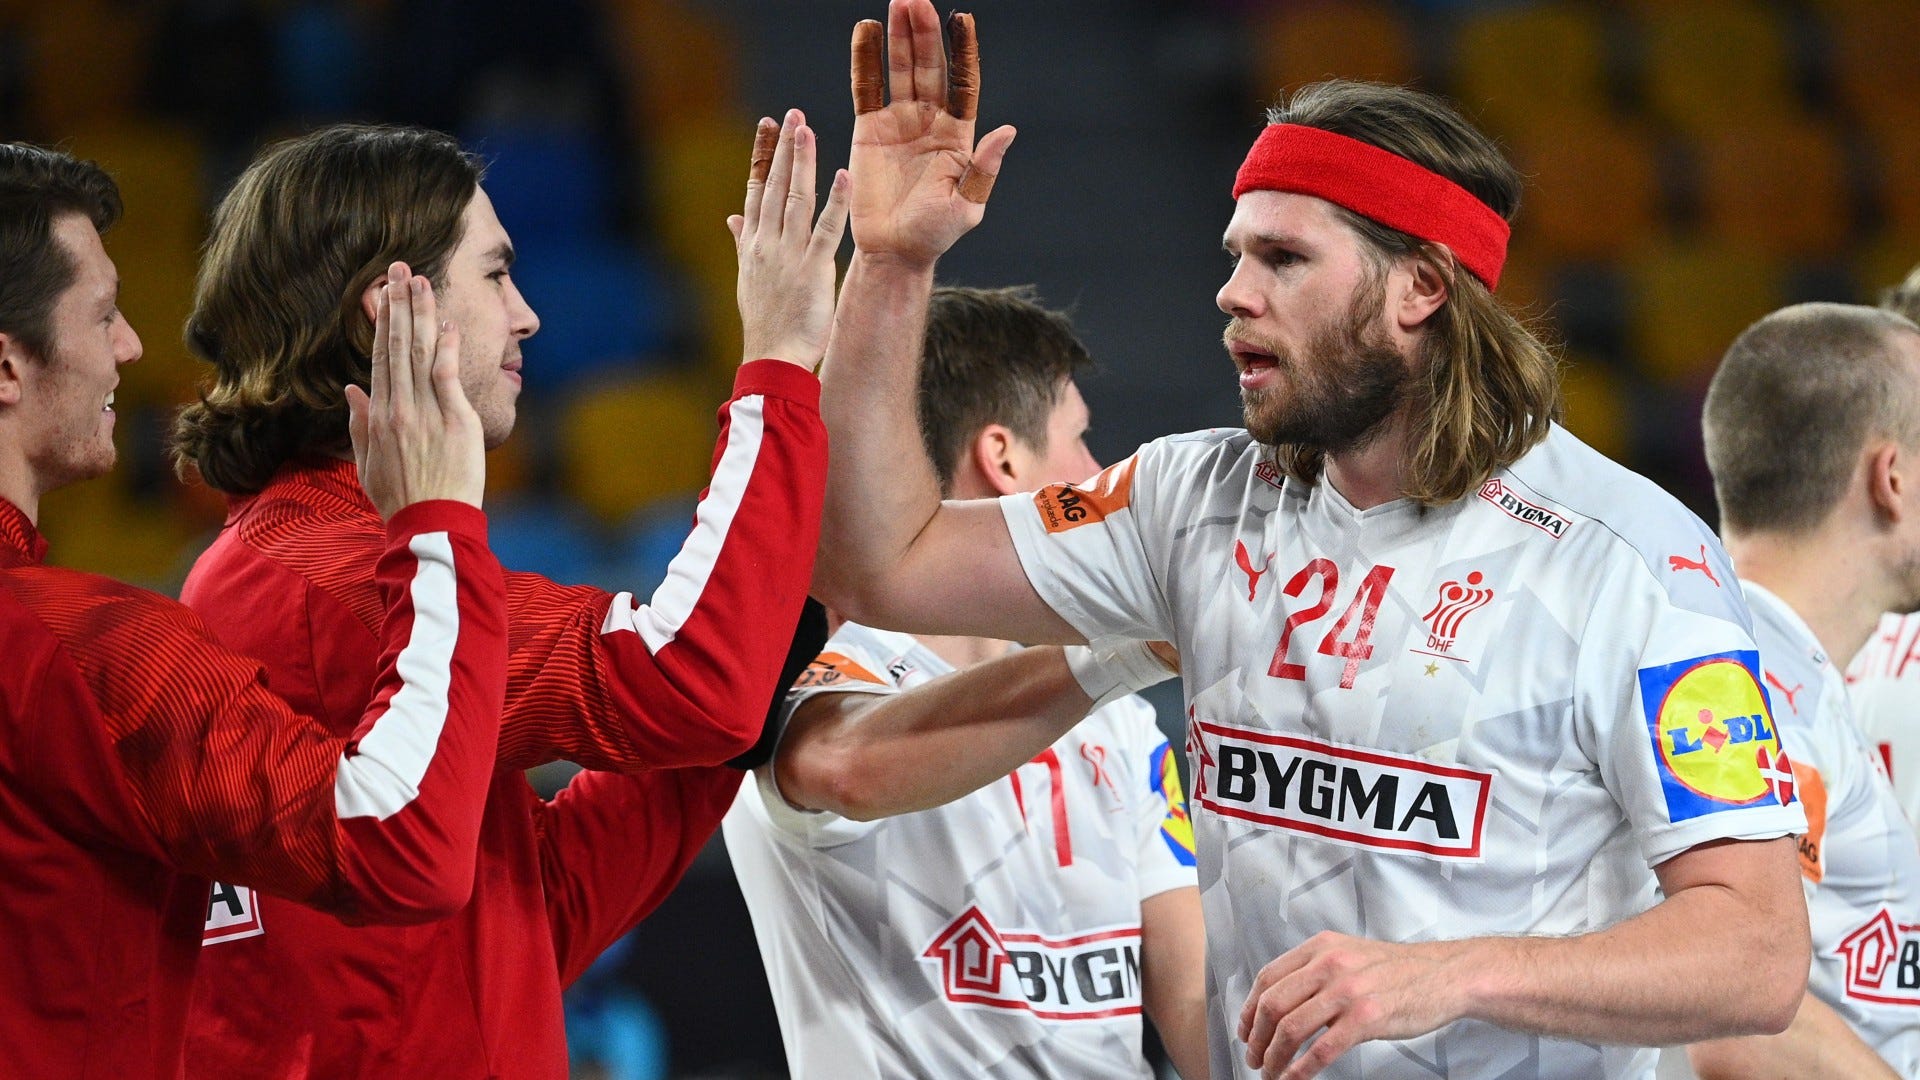 Finale der Handball-WM Dänemark gegen Schweden heute live im TV und im LIVE -STREAM sehen Goal Deutschland